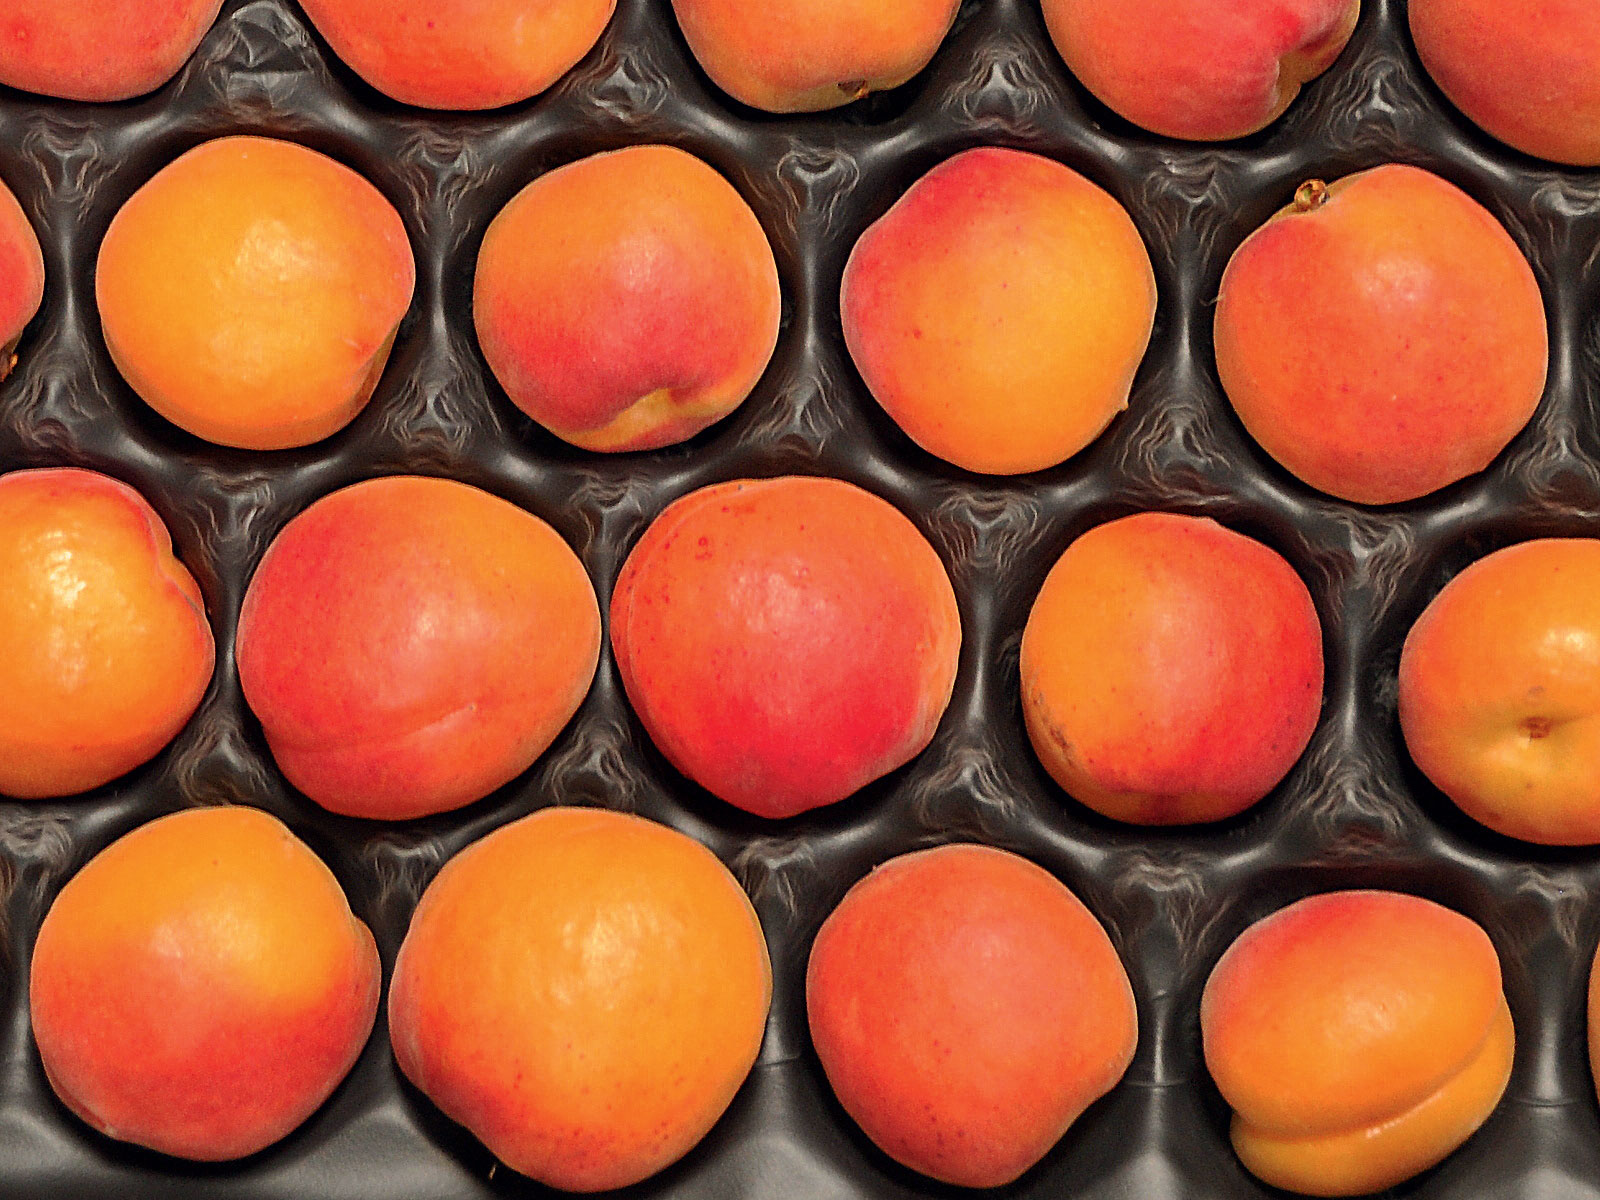 Beeinflussung der Qualität von Aprikosen durch Reifegrad, Temperatur und 1-MCP Behandlung